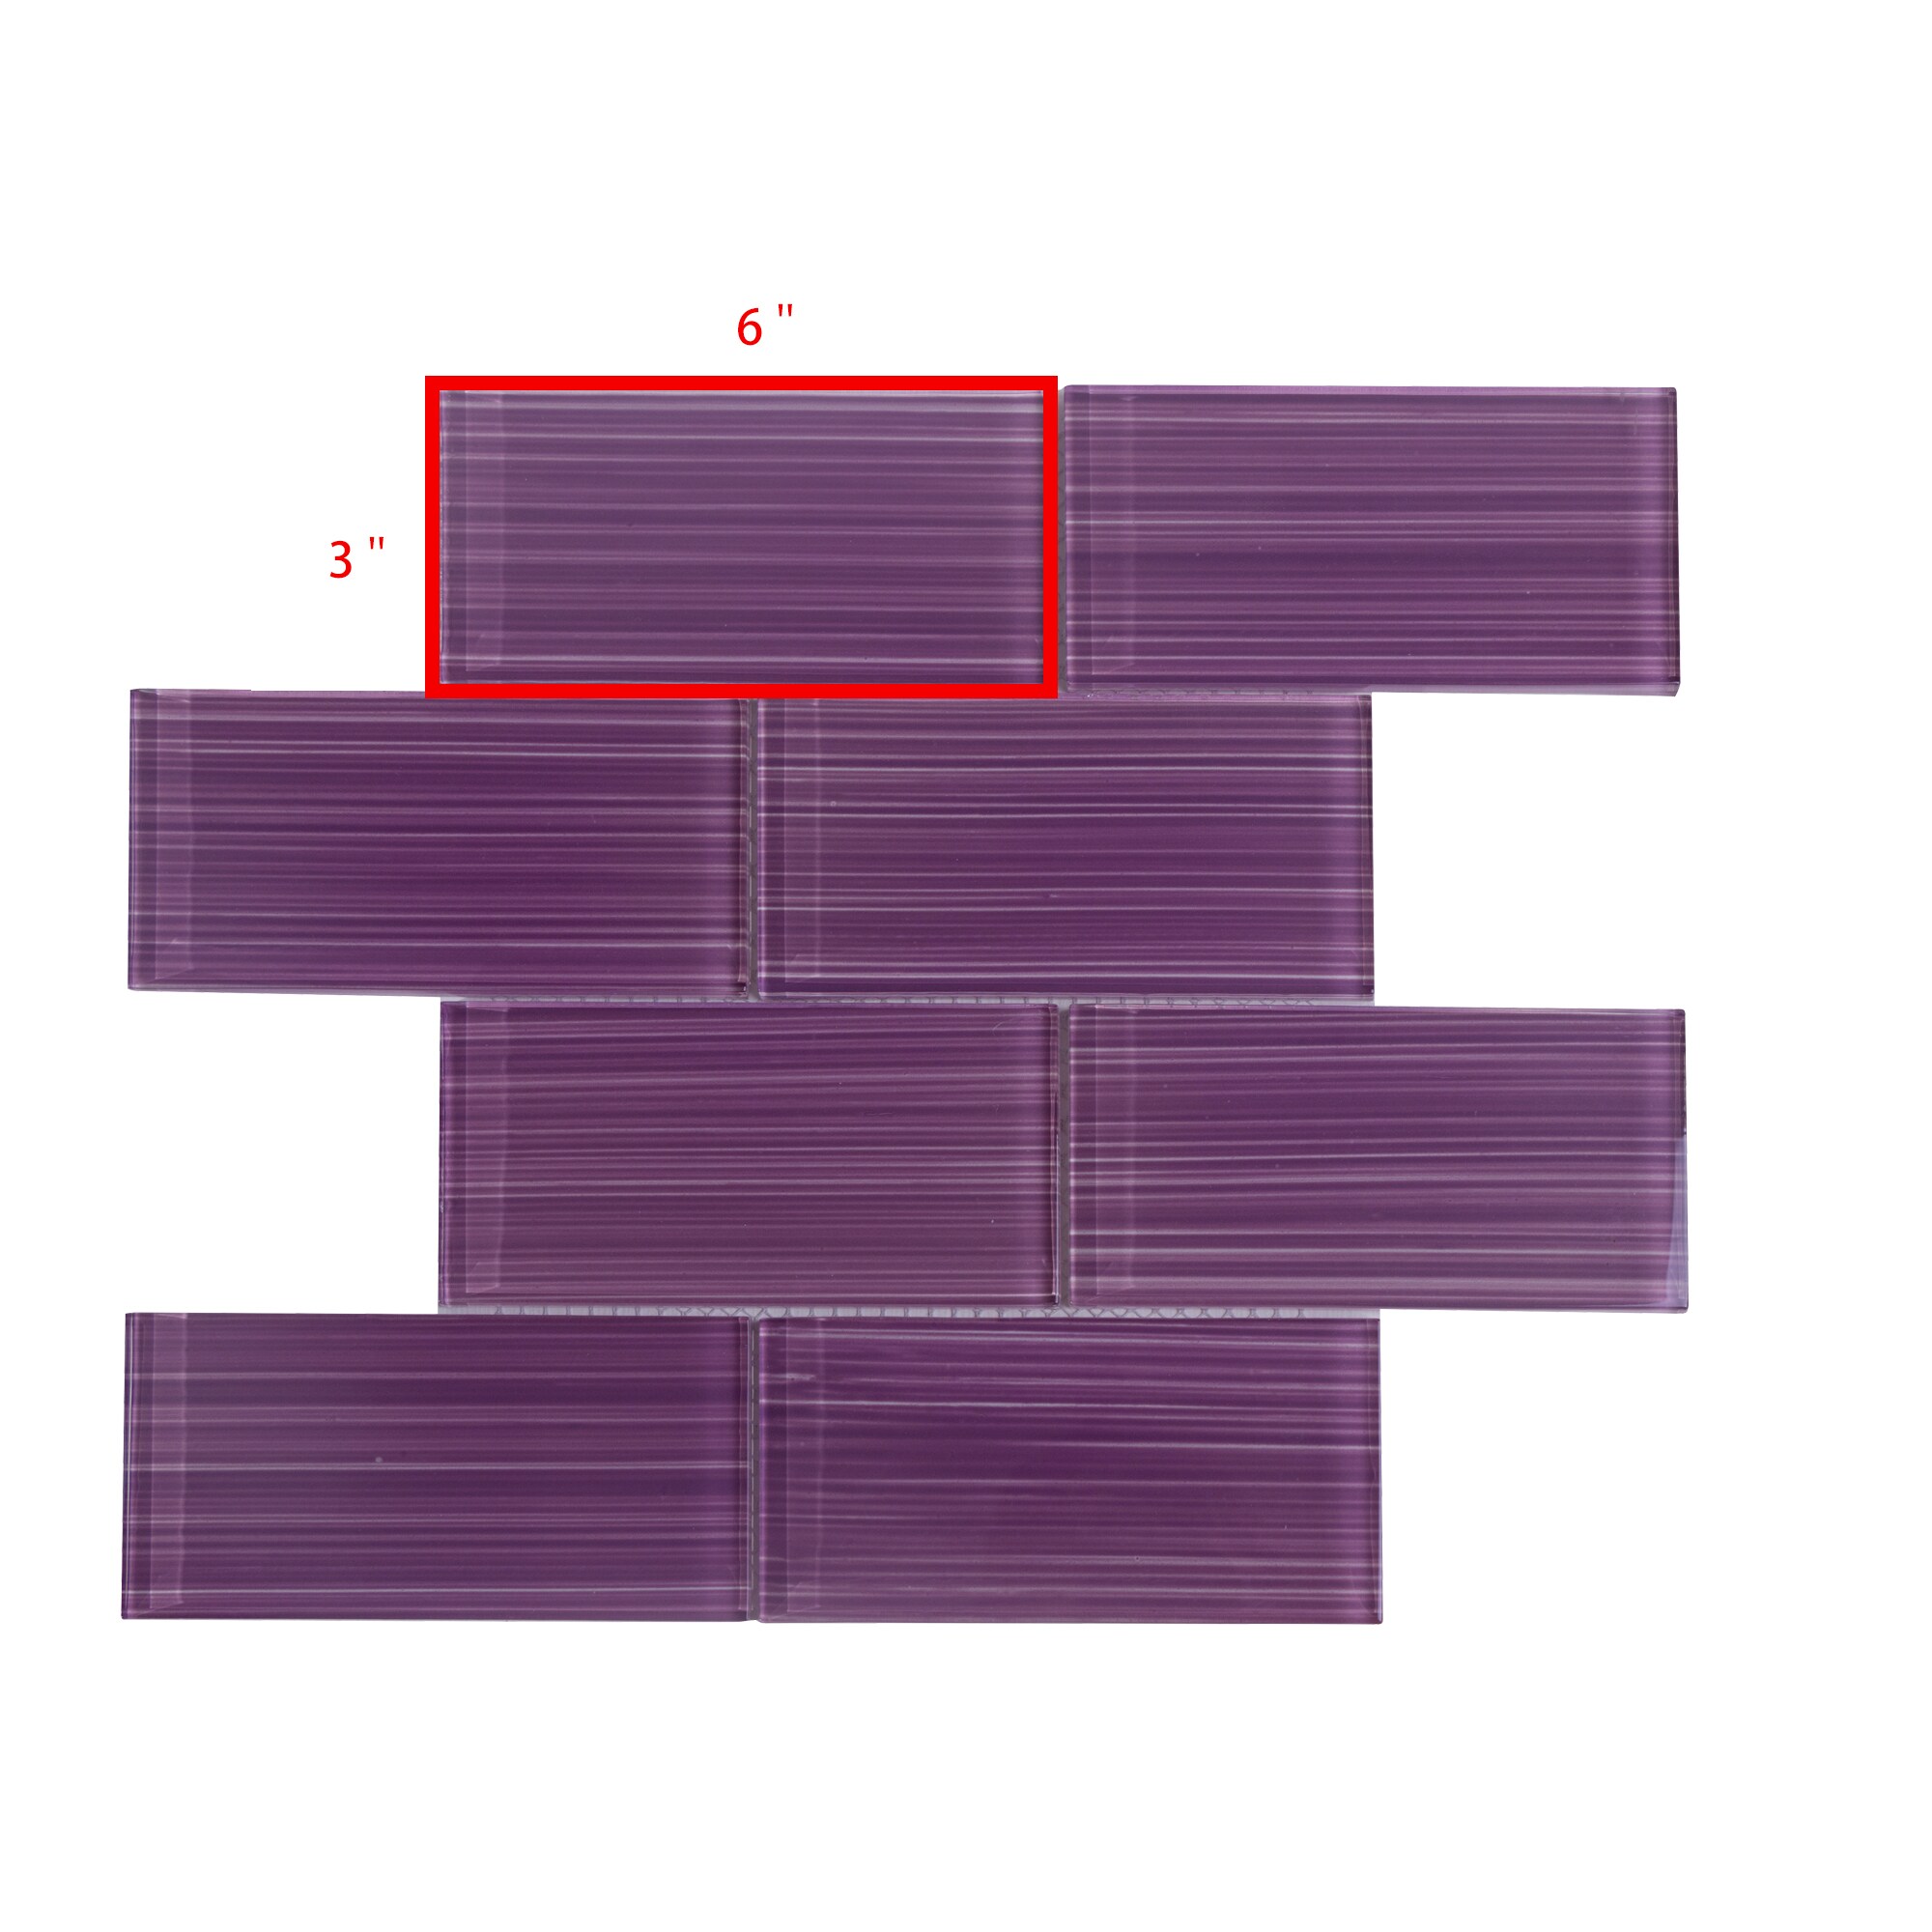 PRISMA Mirror Tile Sheet 1/2 Polaris Clear x 23.5 Square 101-03 – ALL BULBS